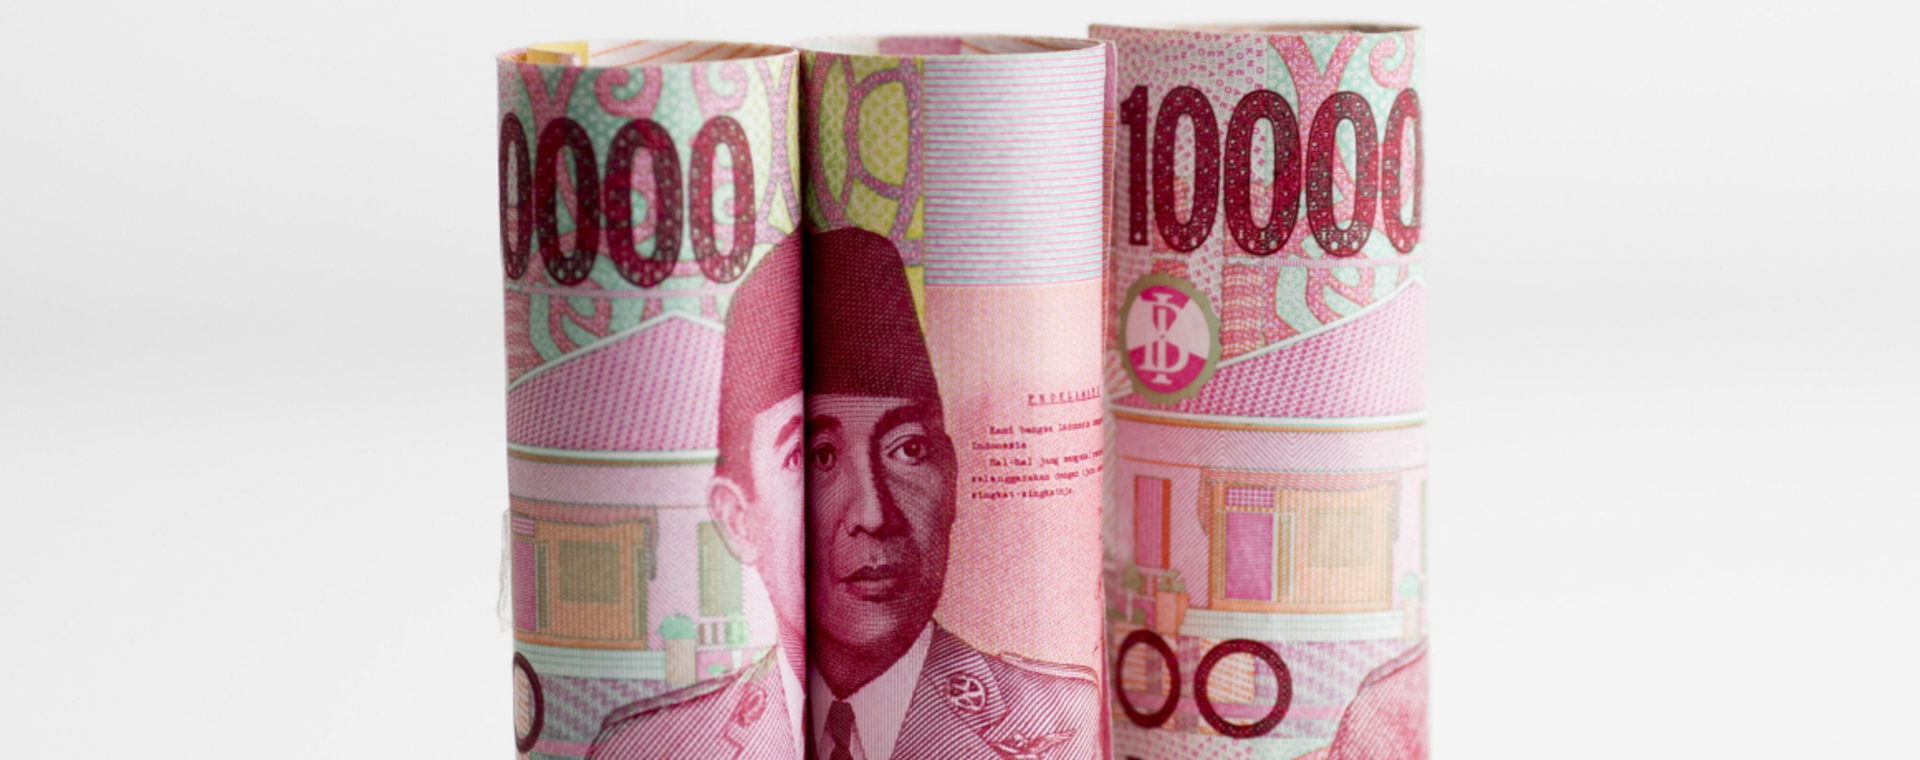 Potret wajah Mantan Presiden Sukarno dalam uang lembar Rp100.000 yang berjejer./Bloomberg-Brent Lewin.